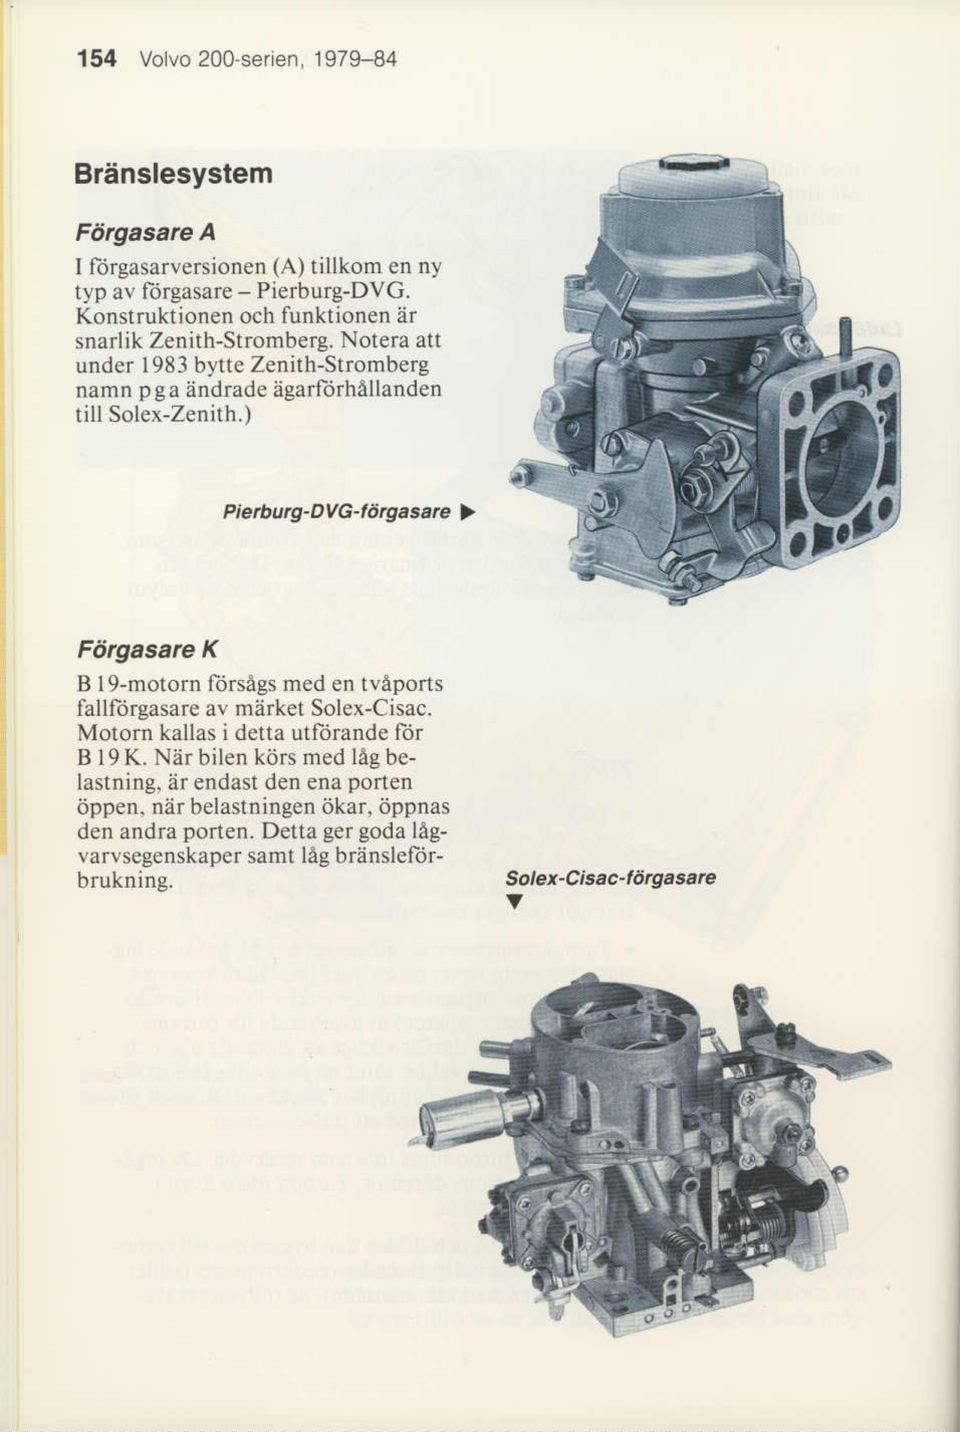 ) Piefuurg-Dvc-rdrgaserc > Fdrgasarc K B lg-motorn lorsegs med en tveports fallliirgasare av market Solex-Cisac. Motorn kallas i detta utliirande lor B 19 K.